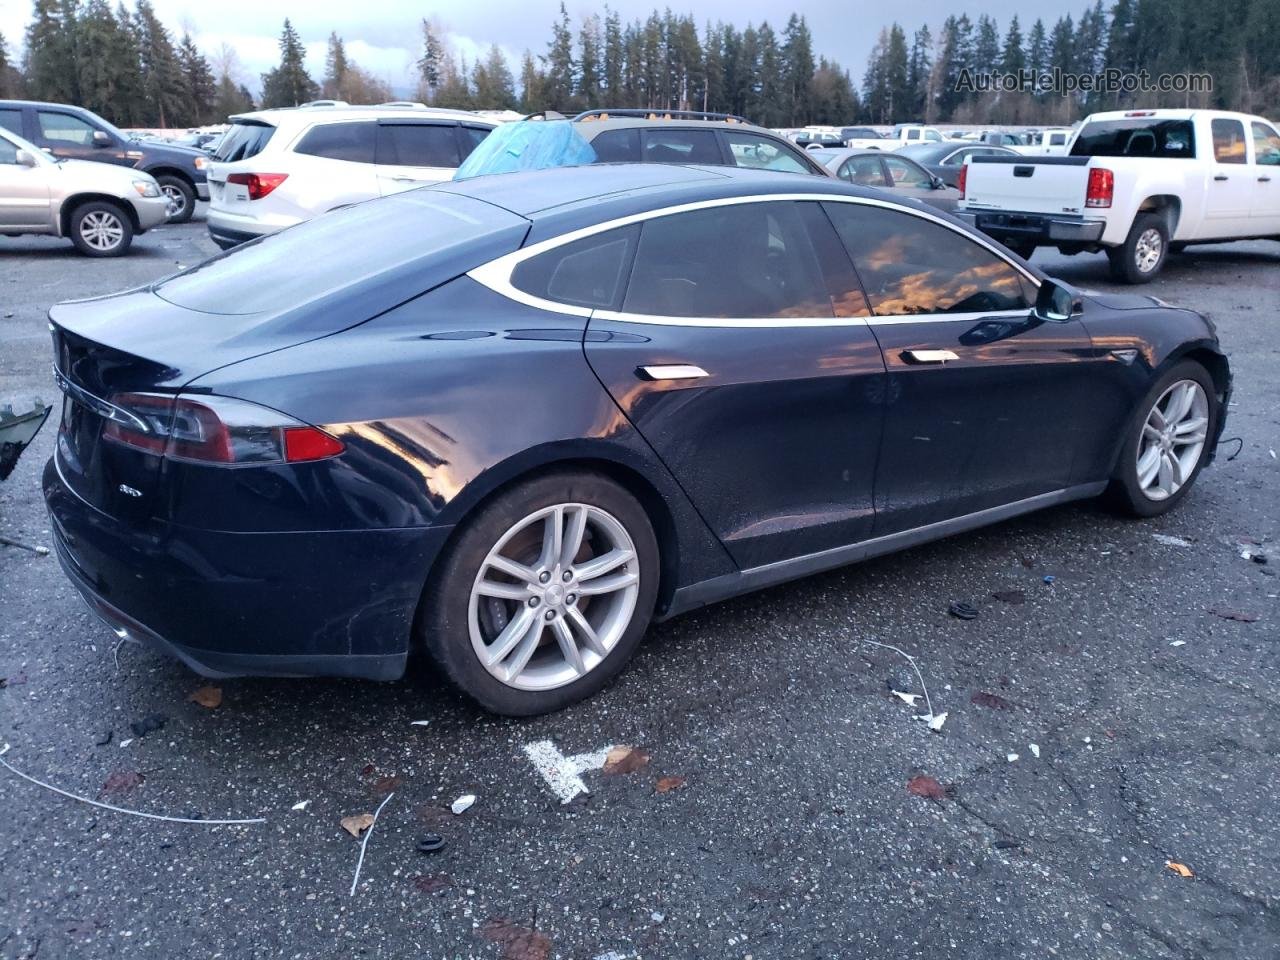 2015 Tesla Model S 85d Blue vin: 5YJSA1H21FFP73183